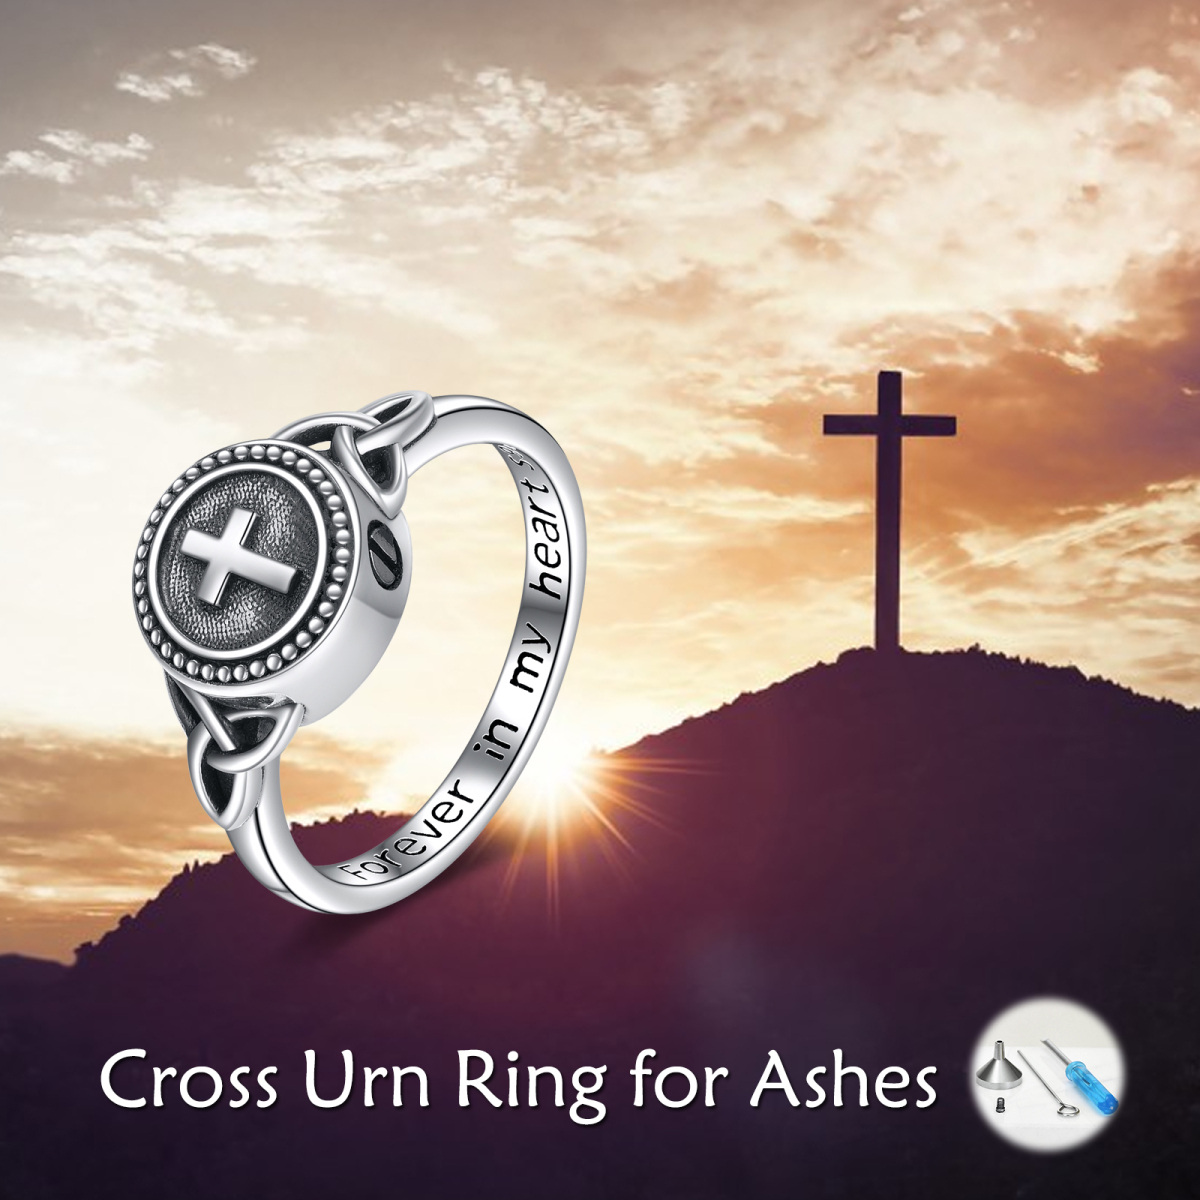 Sterling Silber Kreuz Urne Ring mit eingraviertem Wort-6